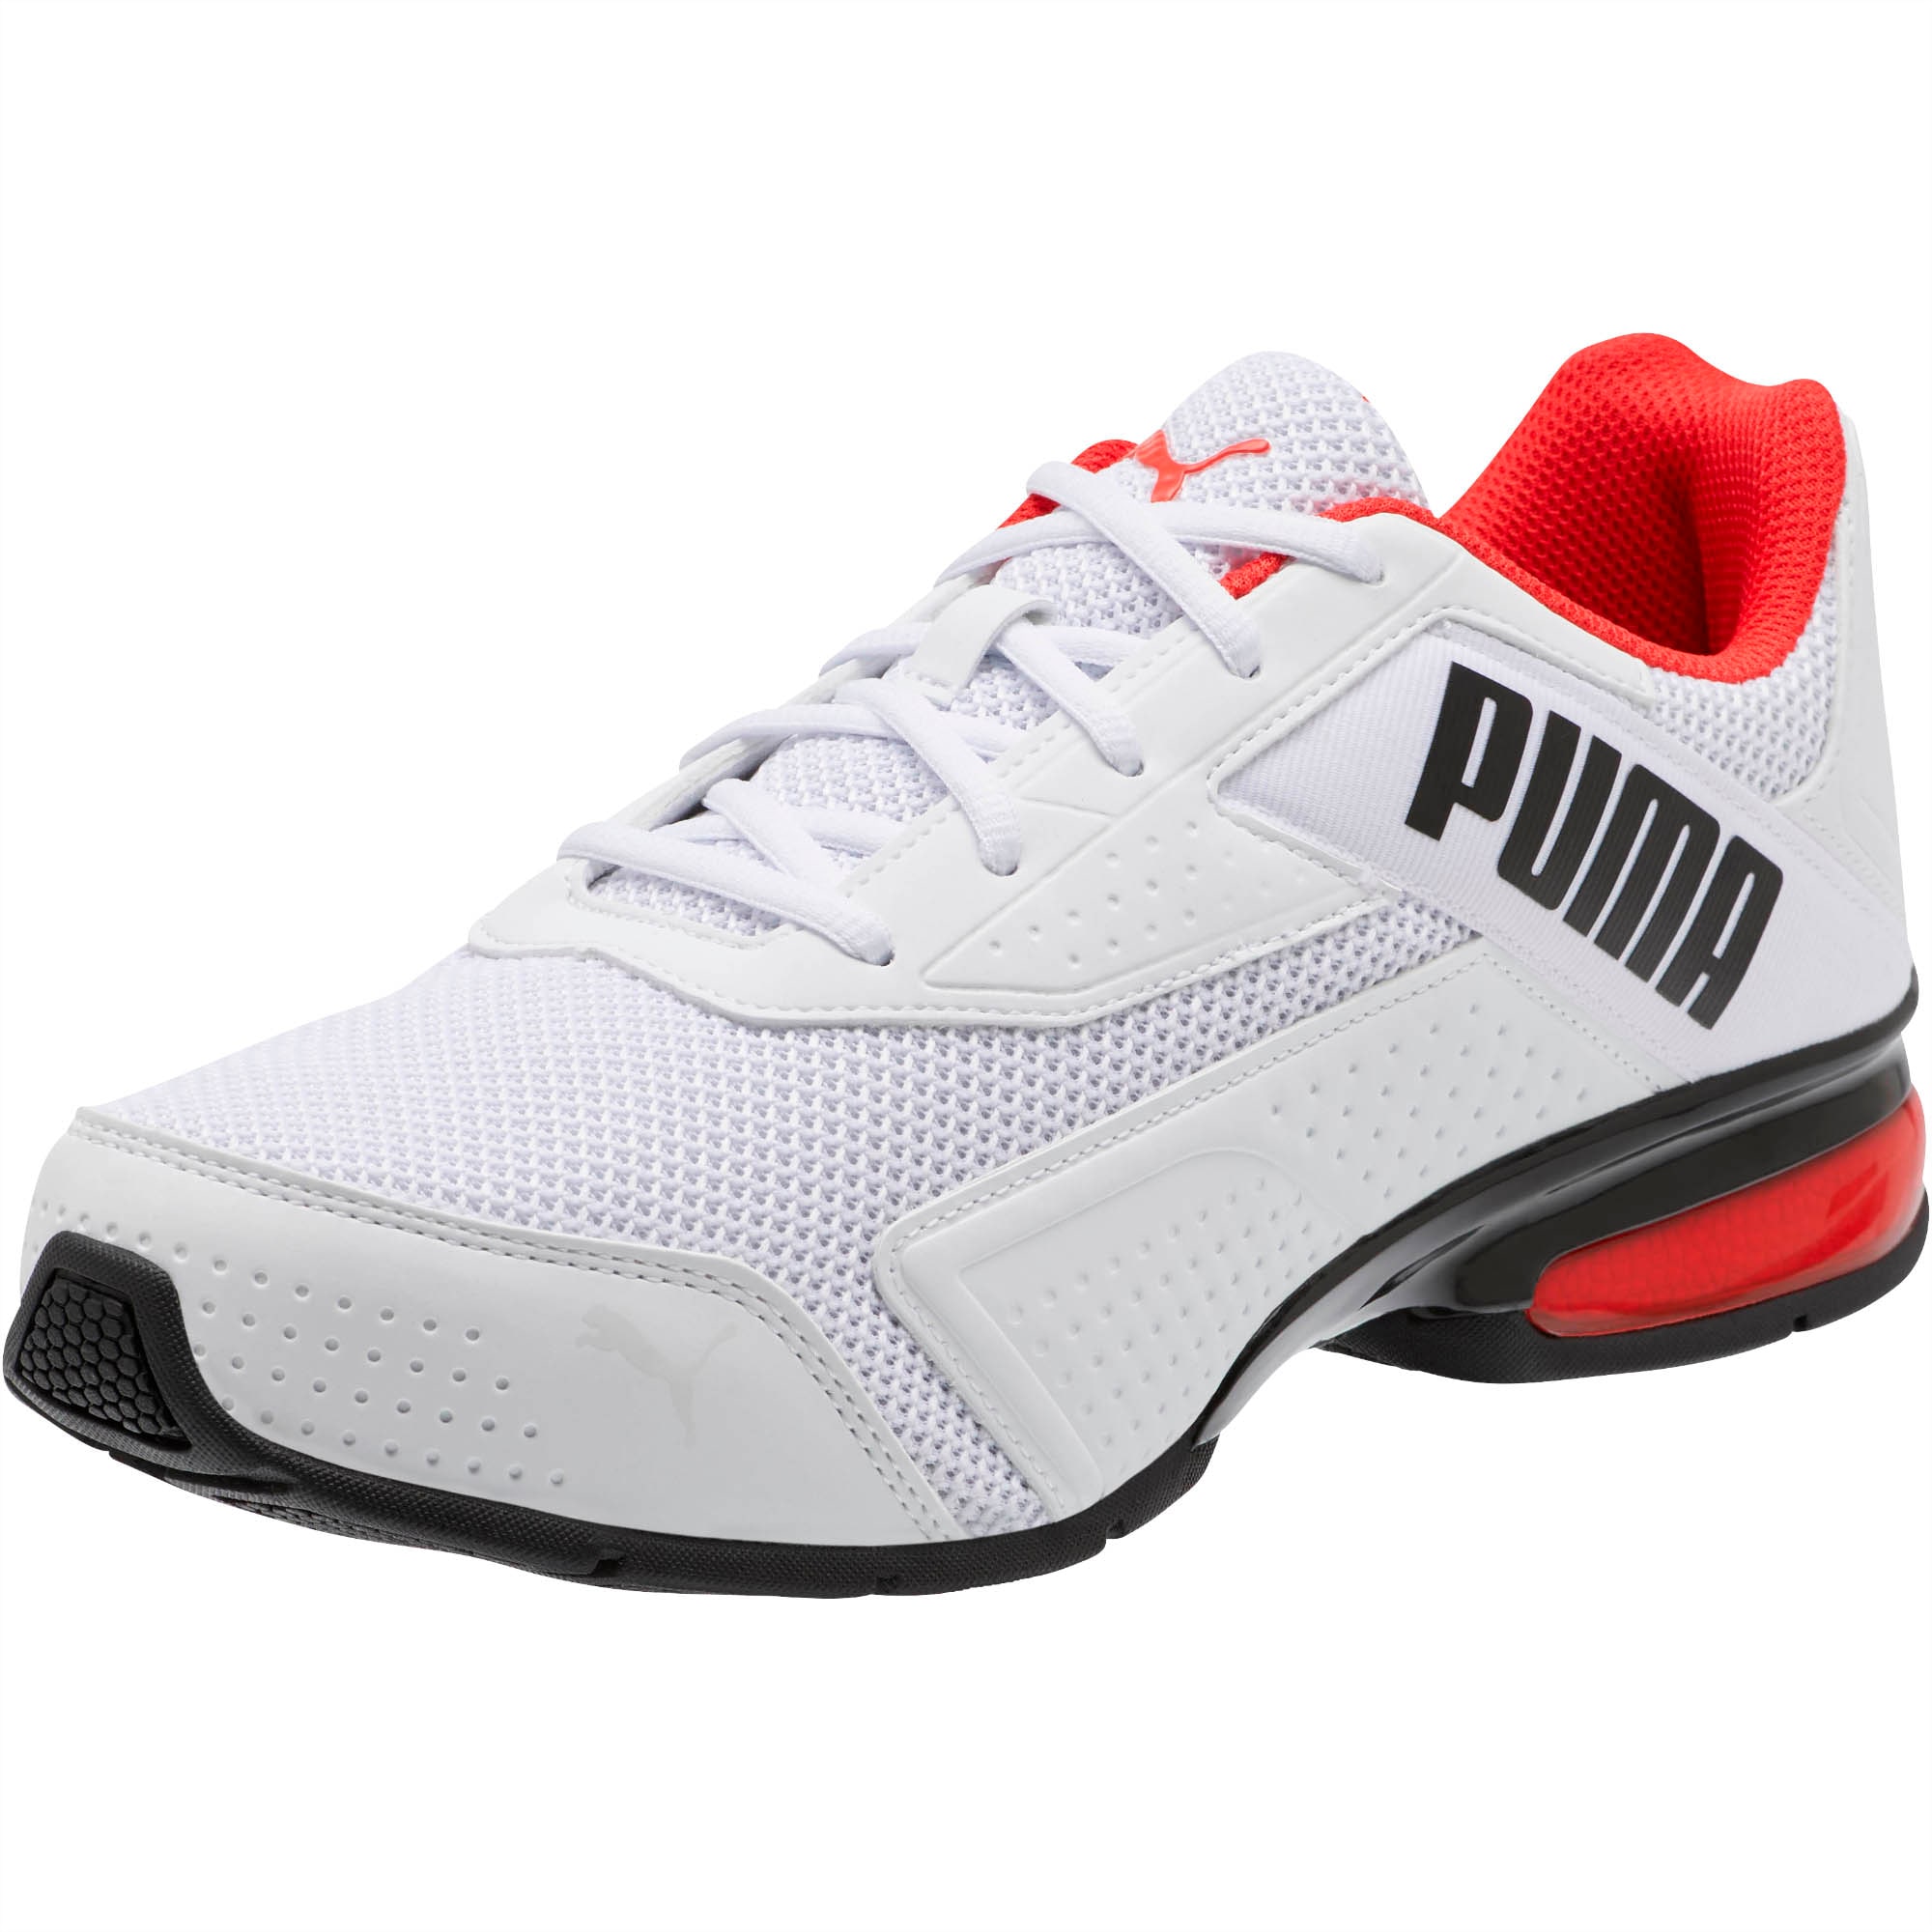 puma offer shoes